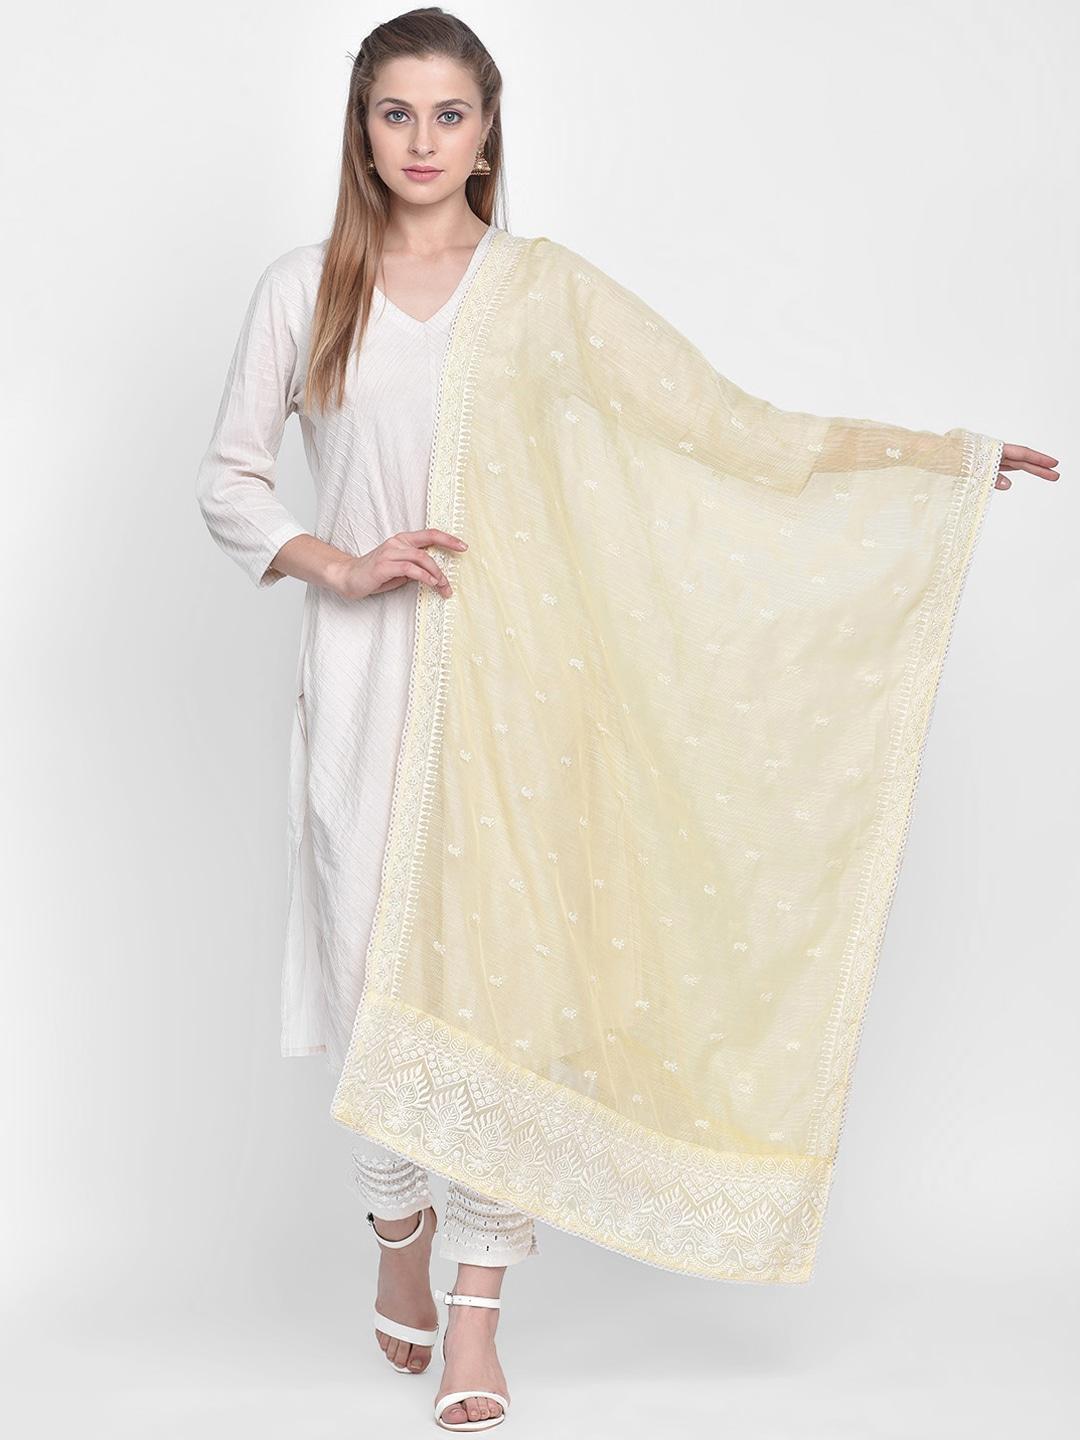 dupatta bazaar yellow & white embroidered net dupatta